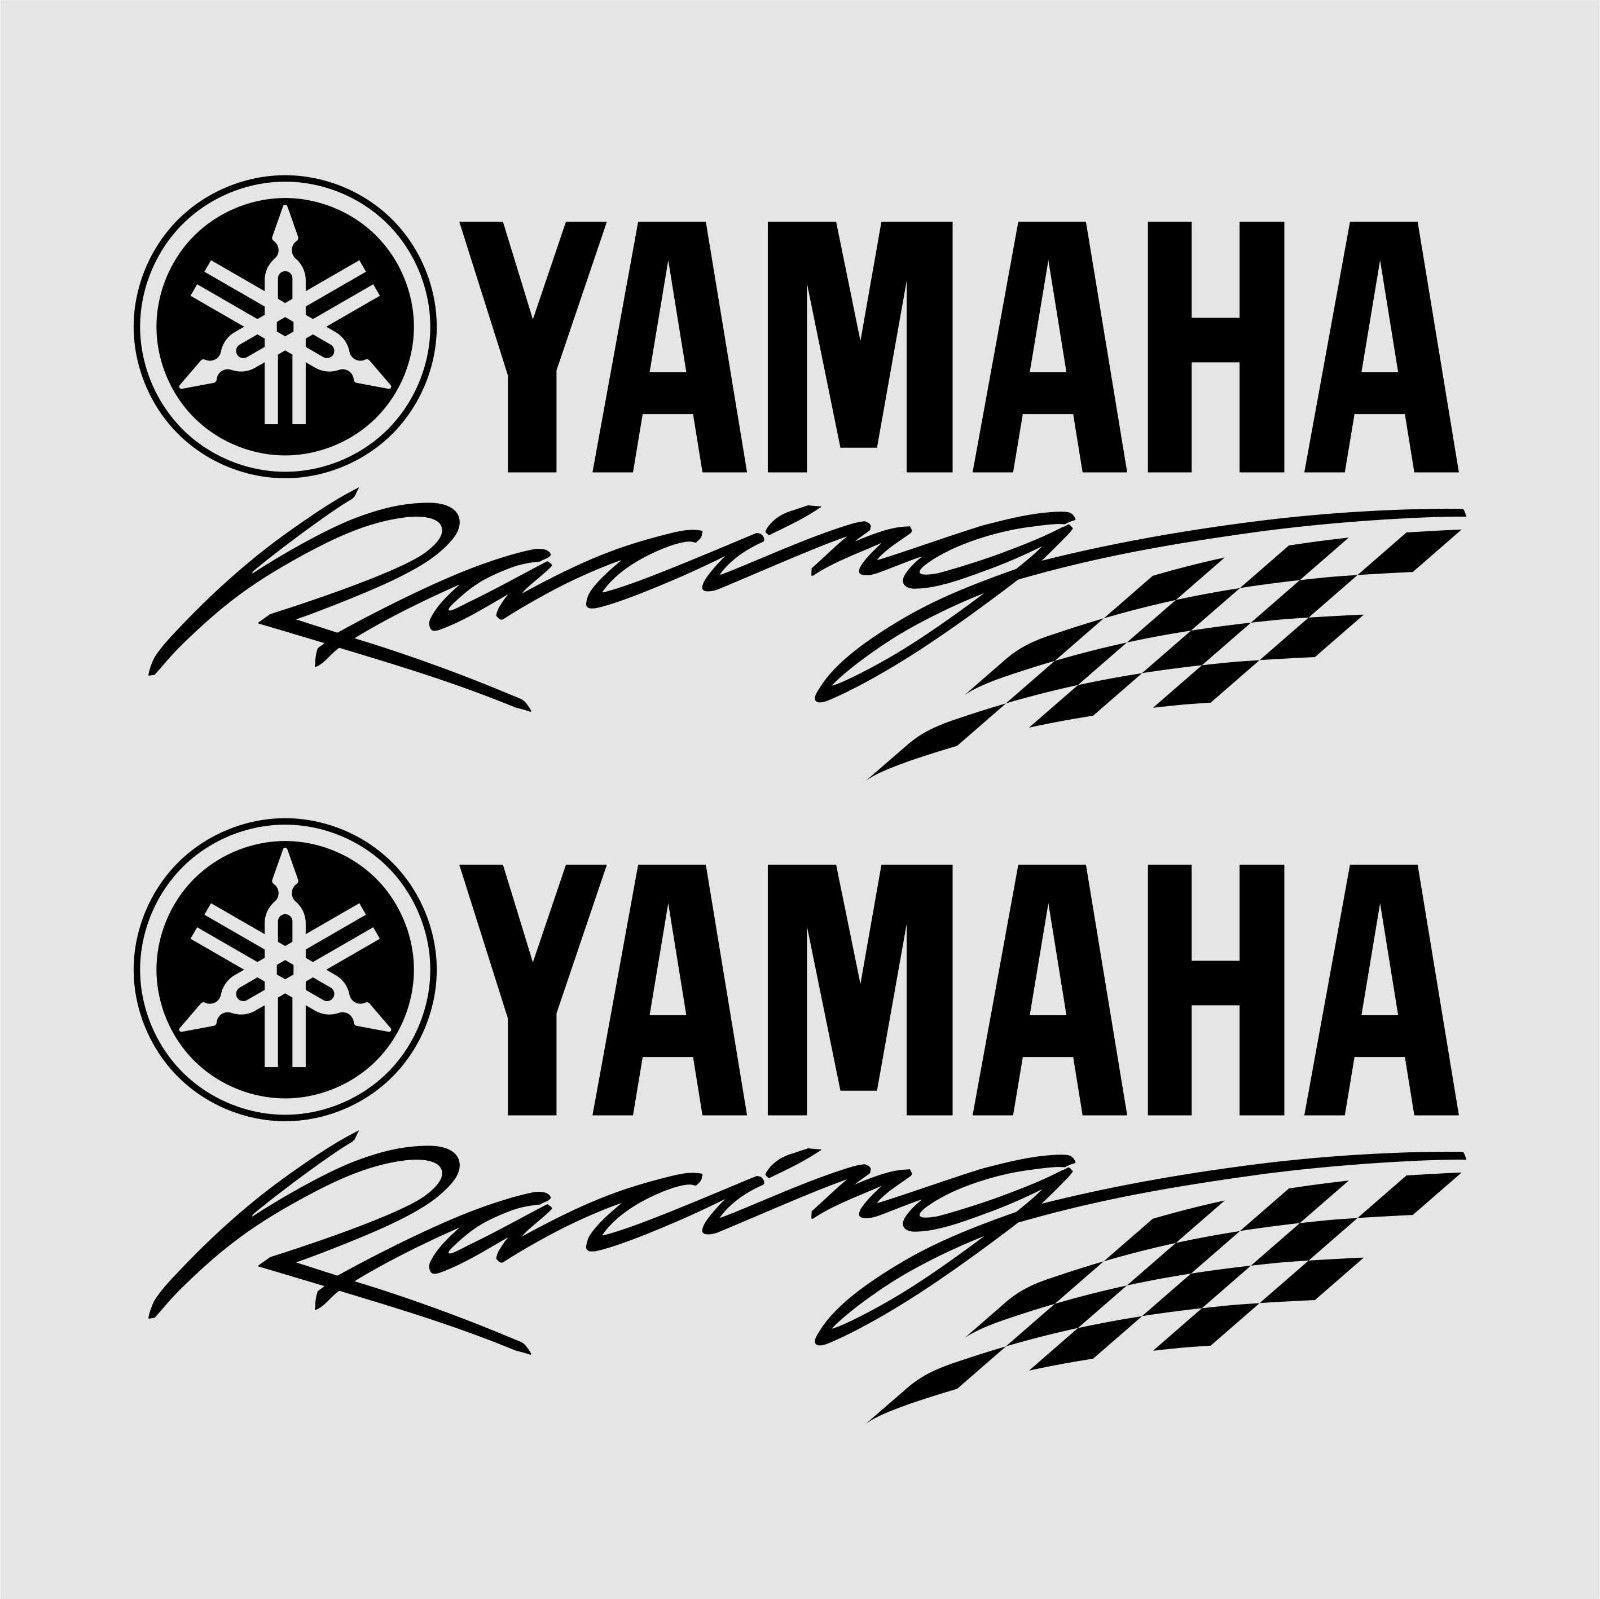 Yamaha Racing Logo Yamaha Vector - Marianafelcman